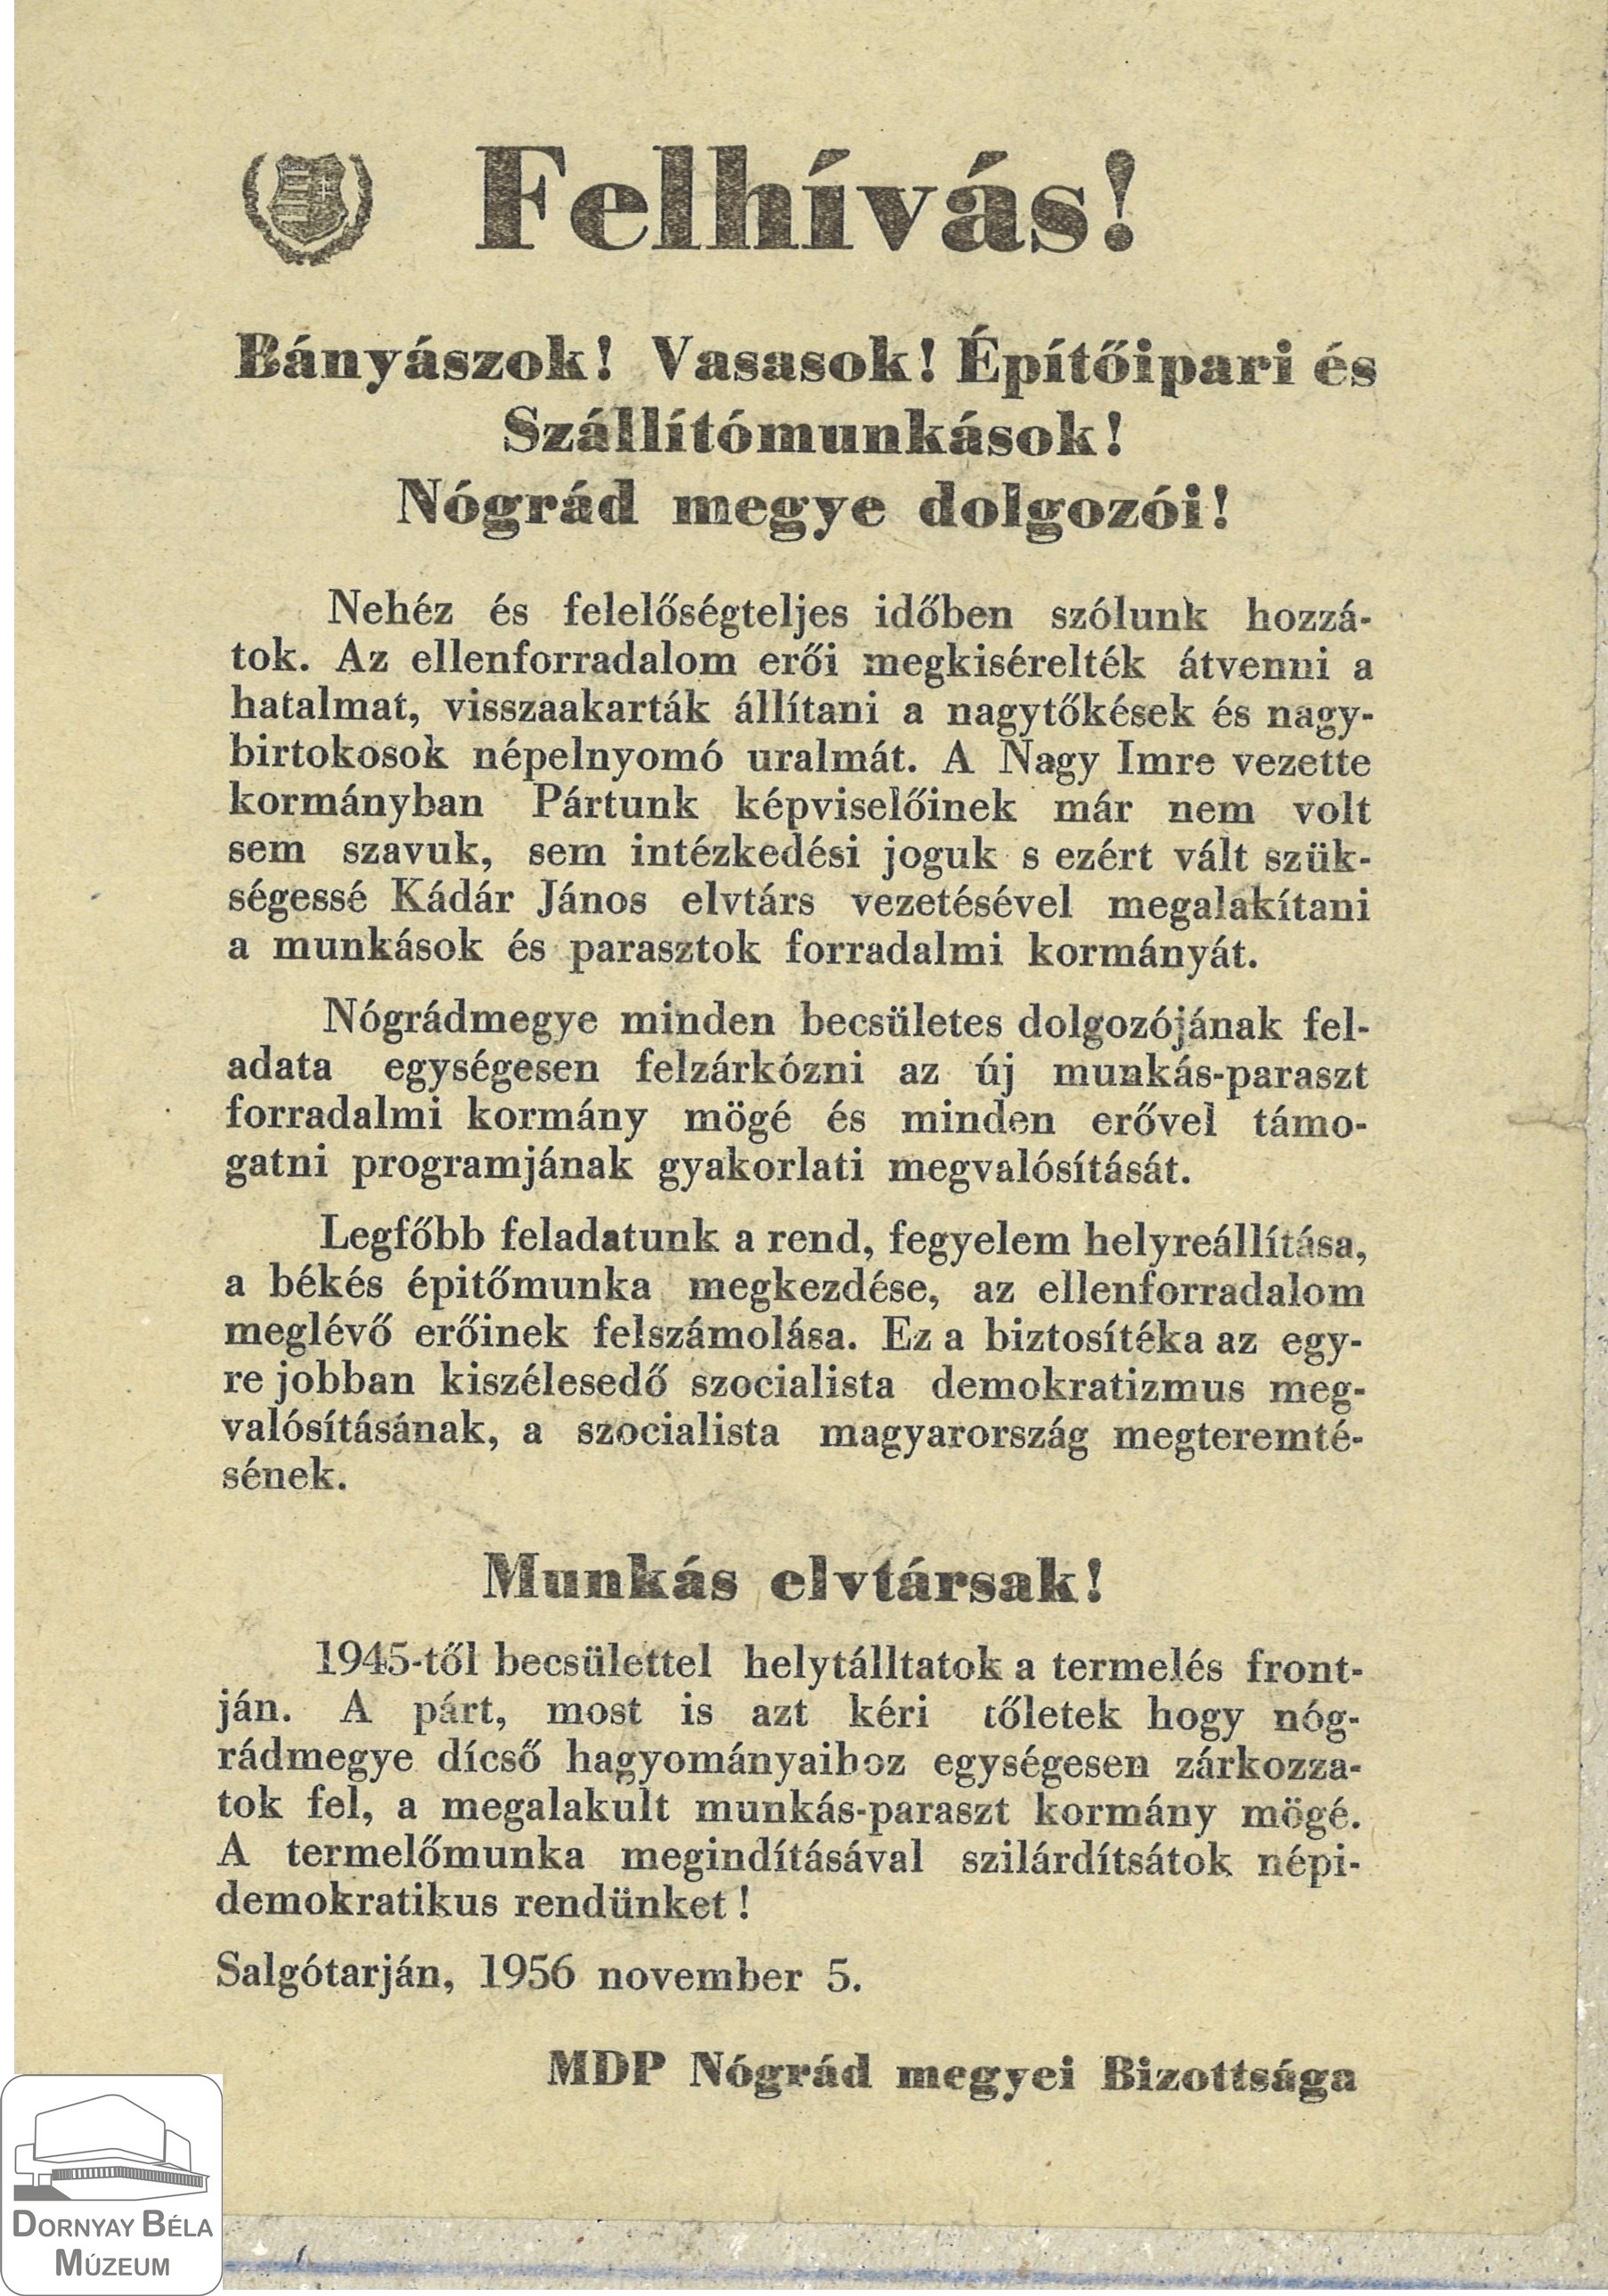 MDP Nógrád megyei Bizottságának felhívása a megye dolgozóihoz. (Dornyay Béla Múzeum, Salgótarján CC BY-NC-SA)